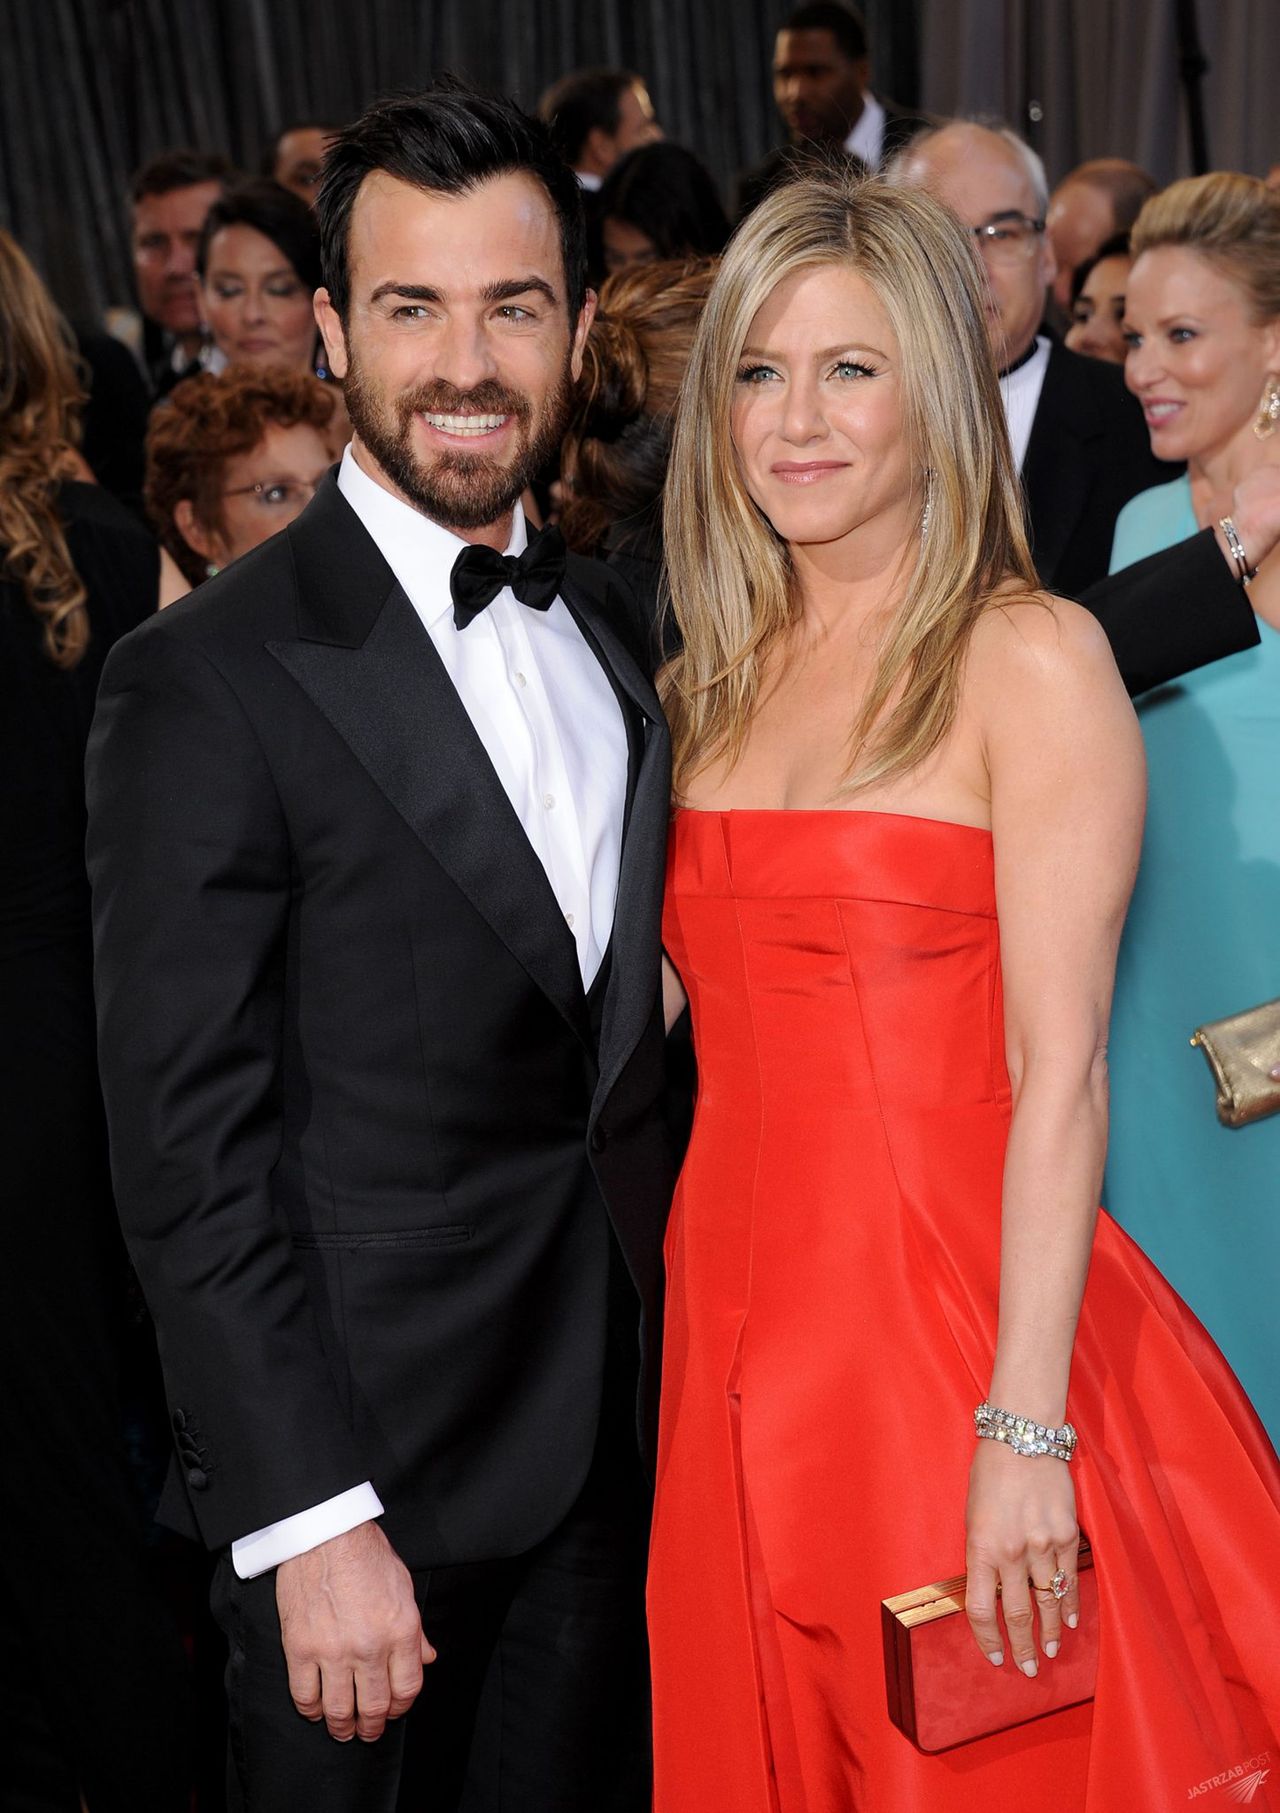 Justin Theroux drugim mężem Jennifer Aniston. Pierwszym był Brad Pitt